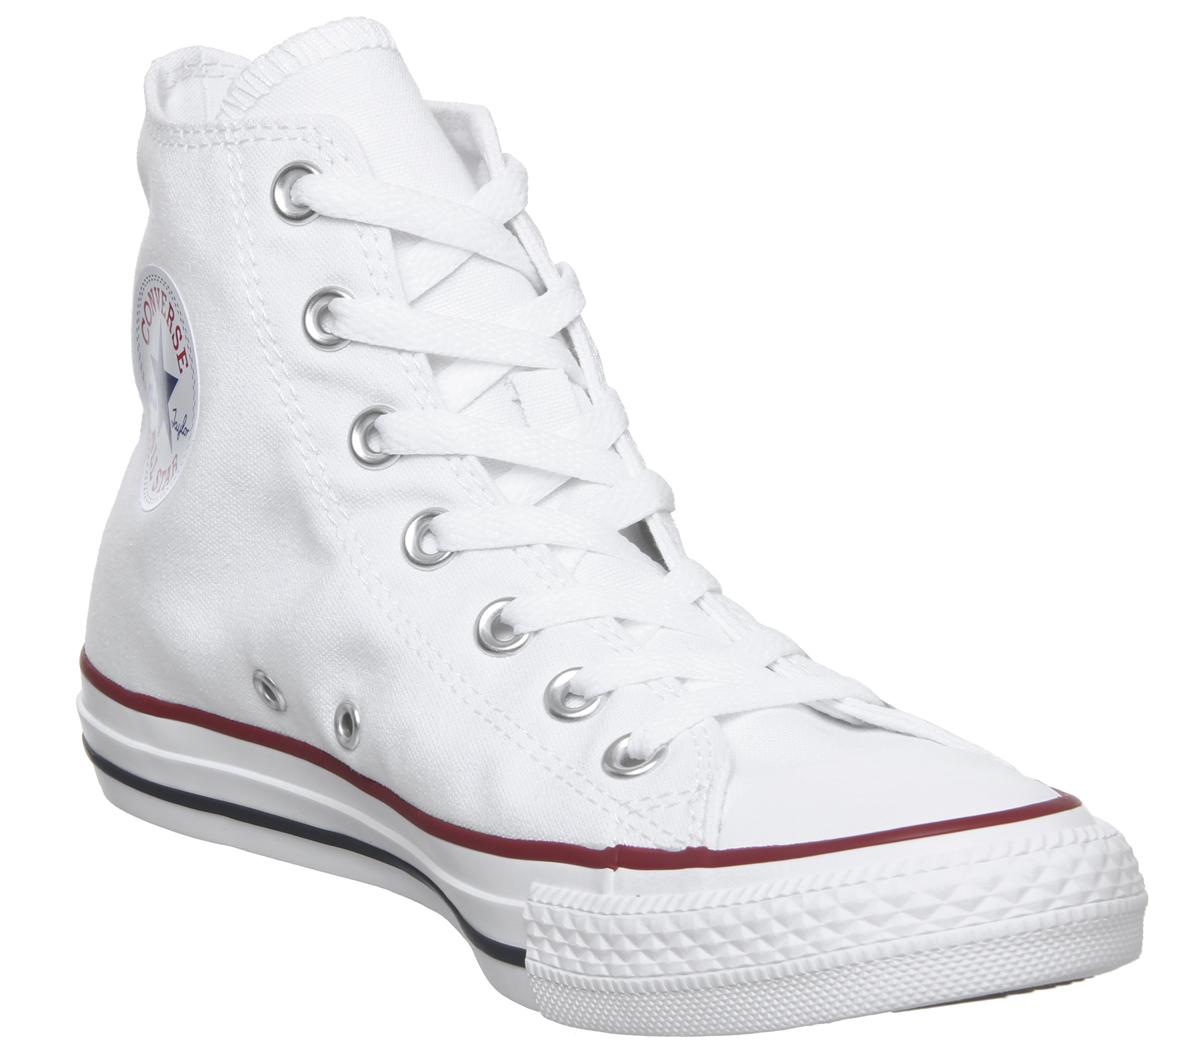 white converse size 6 uk